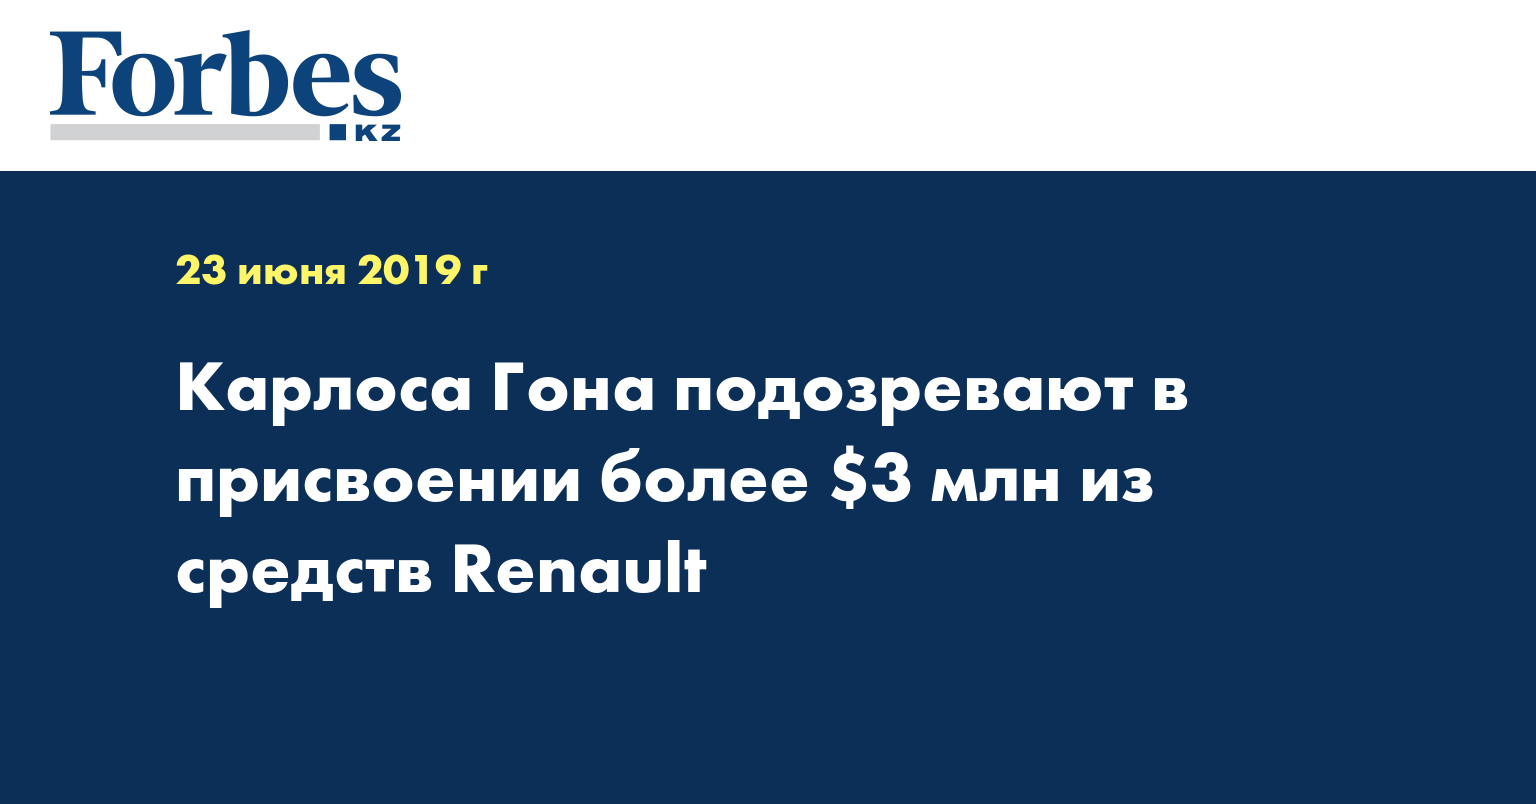 Карлоса Гона подозревают в присвоении более $3 млн из средств Renault